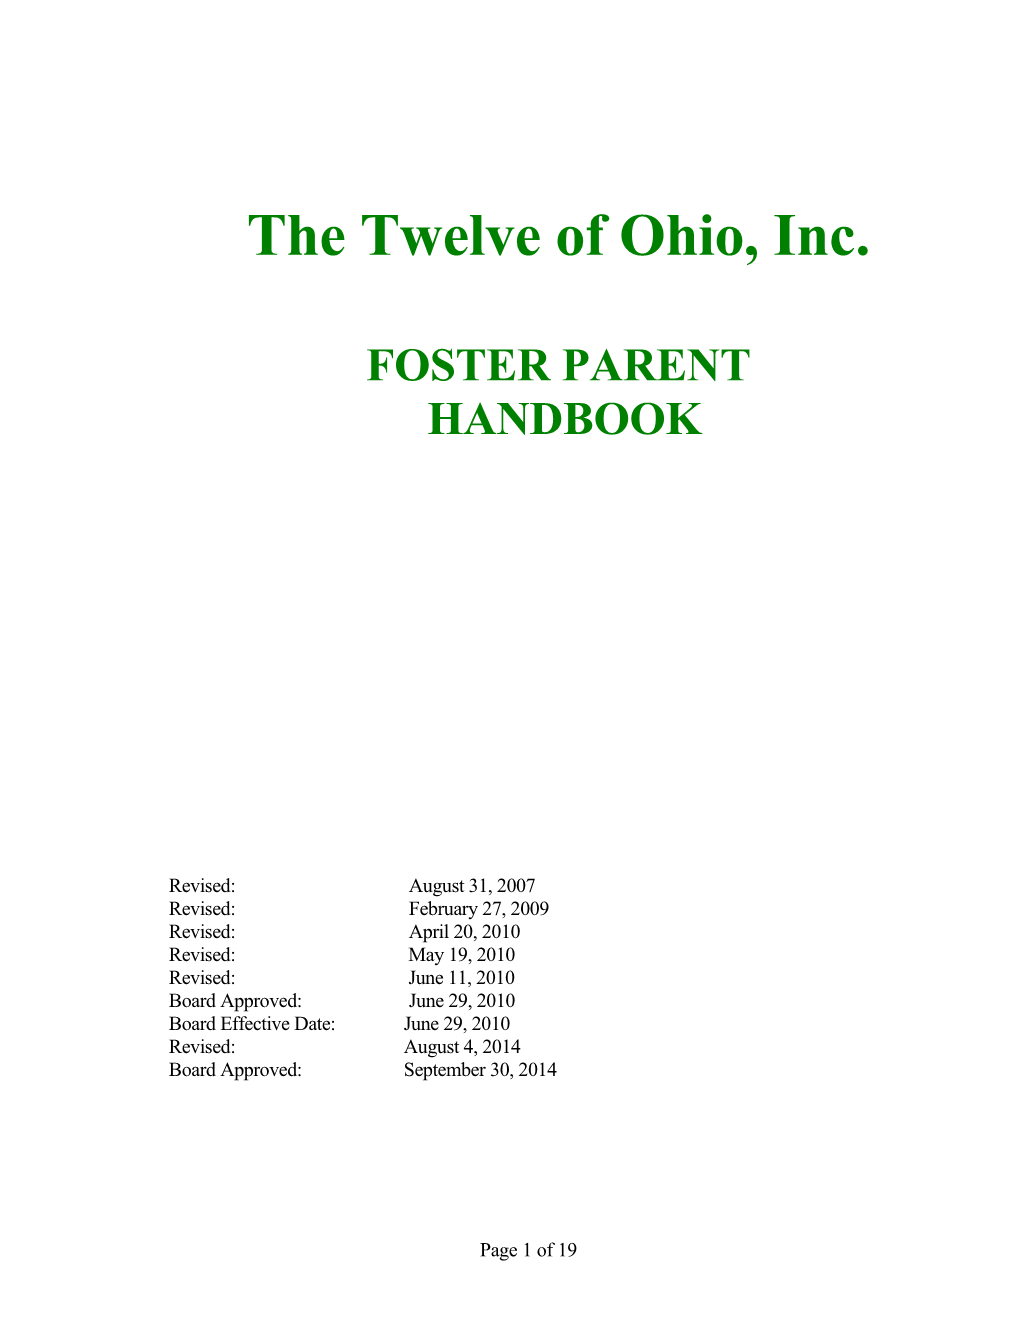 The Twelve of Ohio, Inc s1